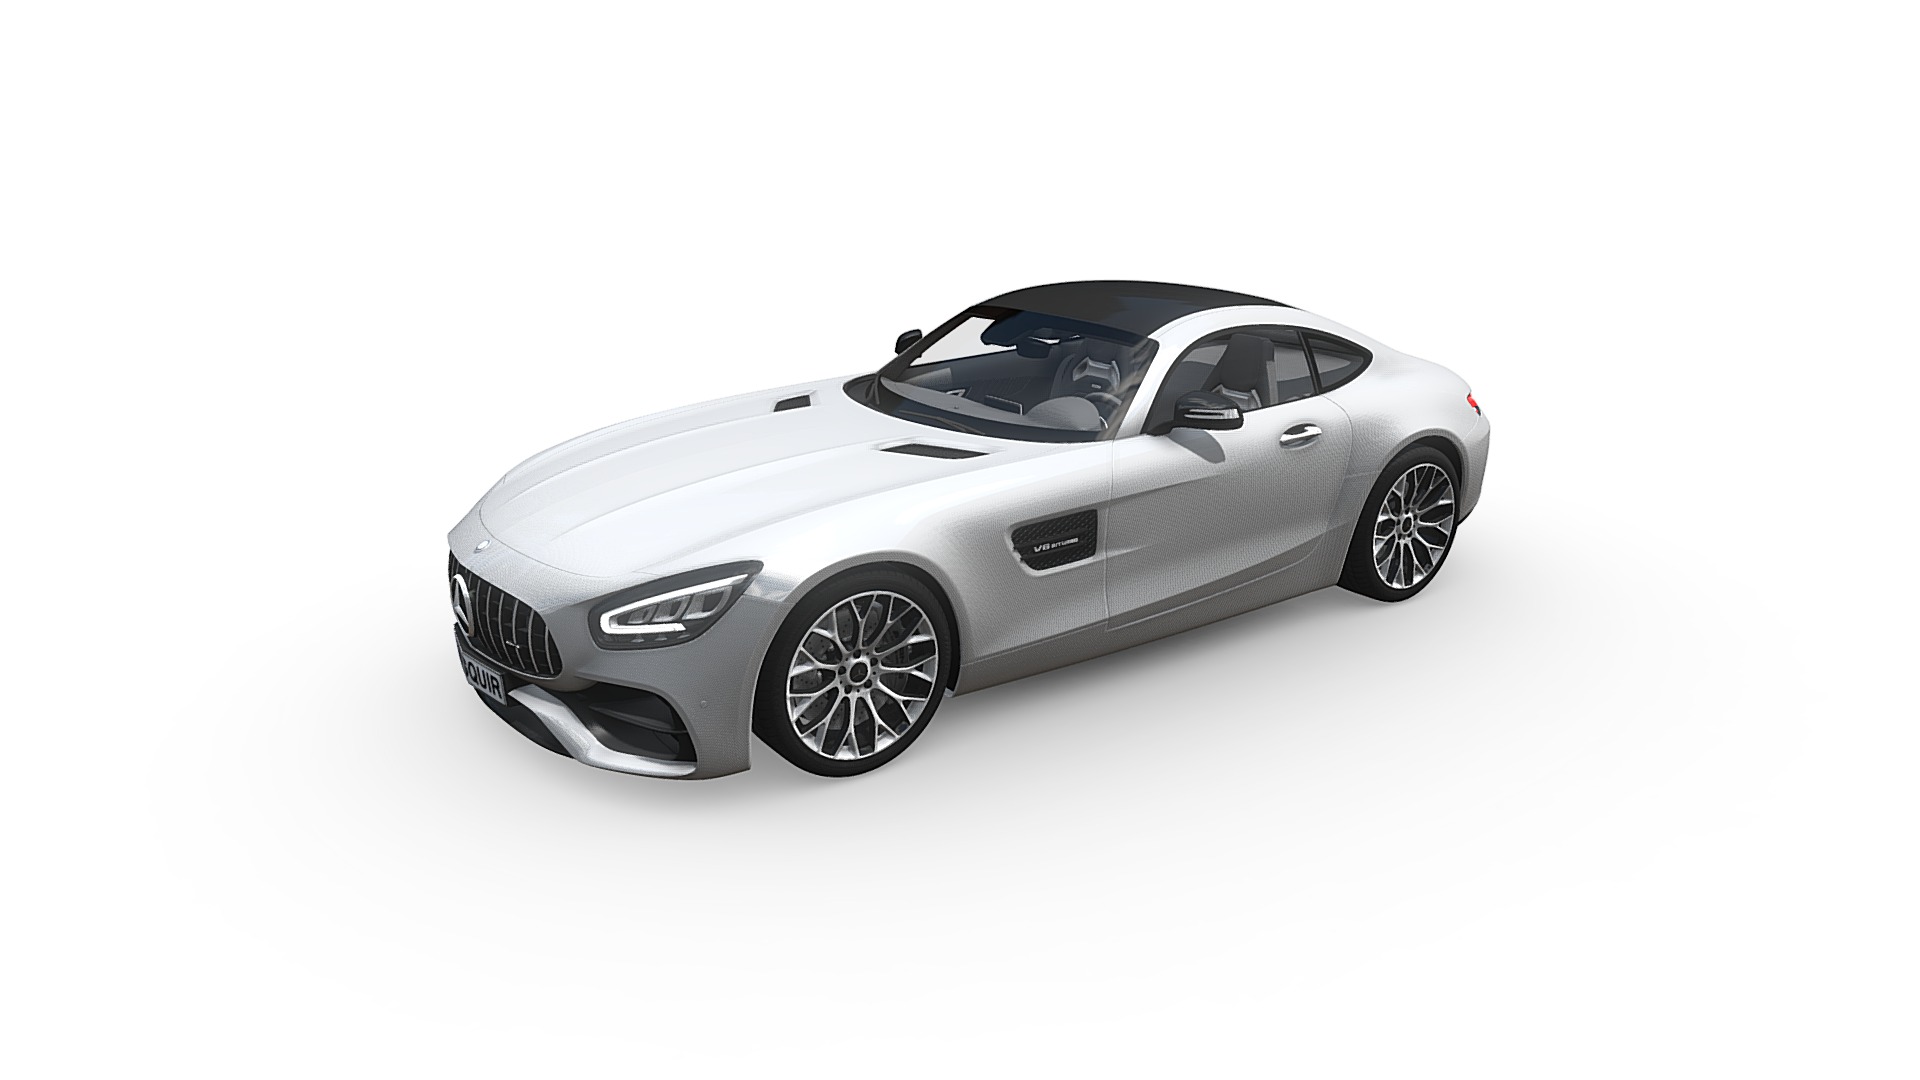 3D model Mercedes AMG GT 2020 - This is a 3D model of the Mercedes AMG GT 2020. The 3D model is about a silver sports car.